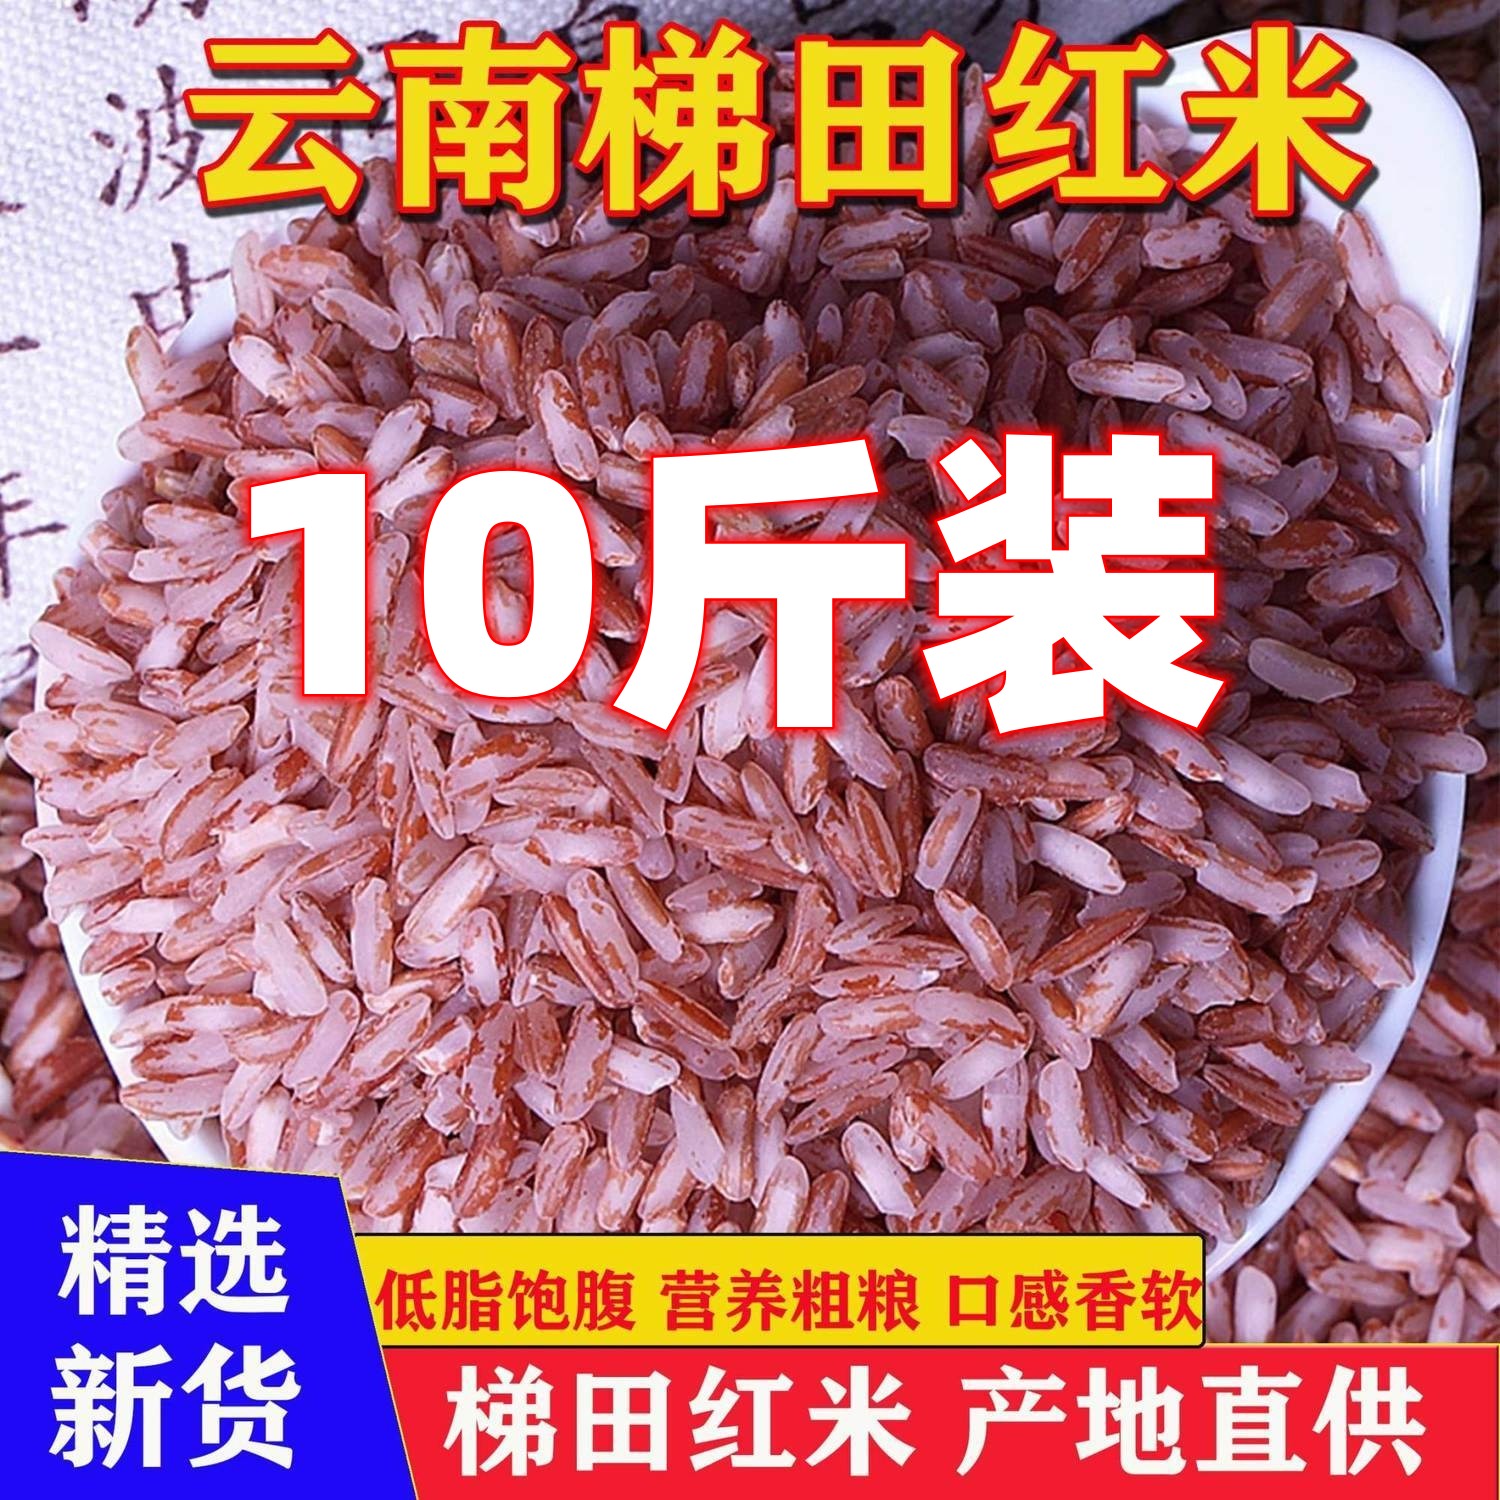 云南哈尼梯田红米红糯米软米哈尼胭脂米大米10斤农家新米杂粮粥米